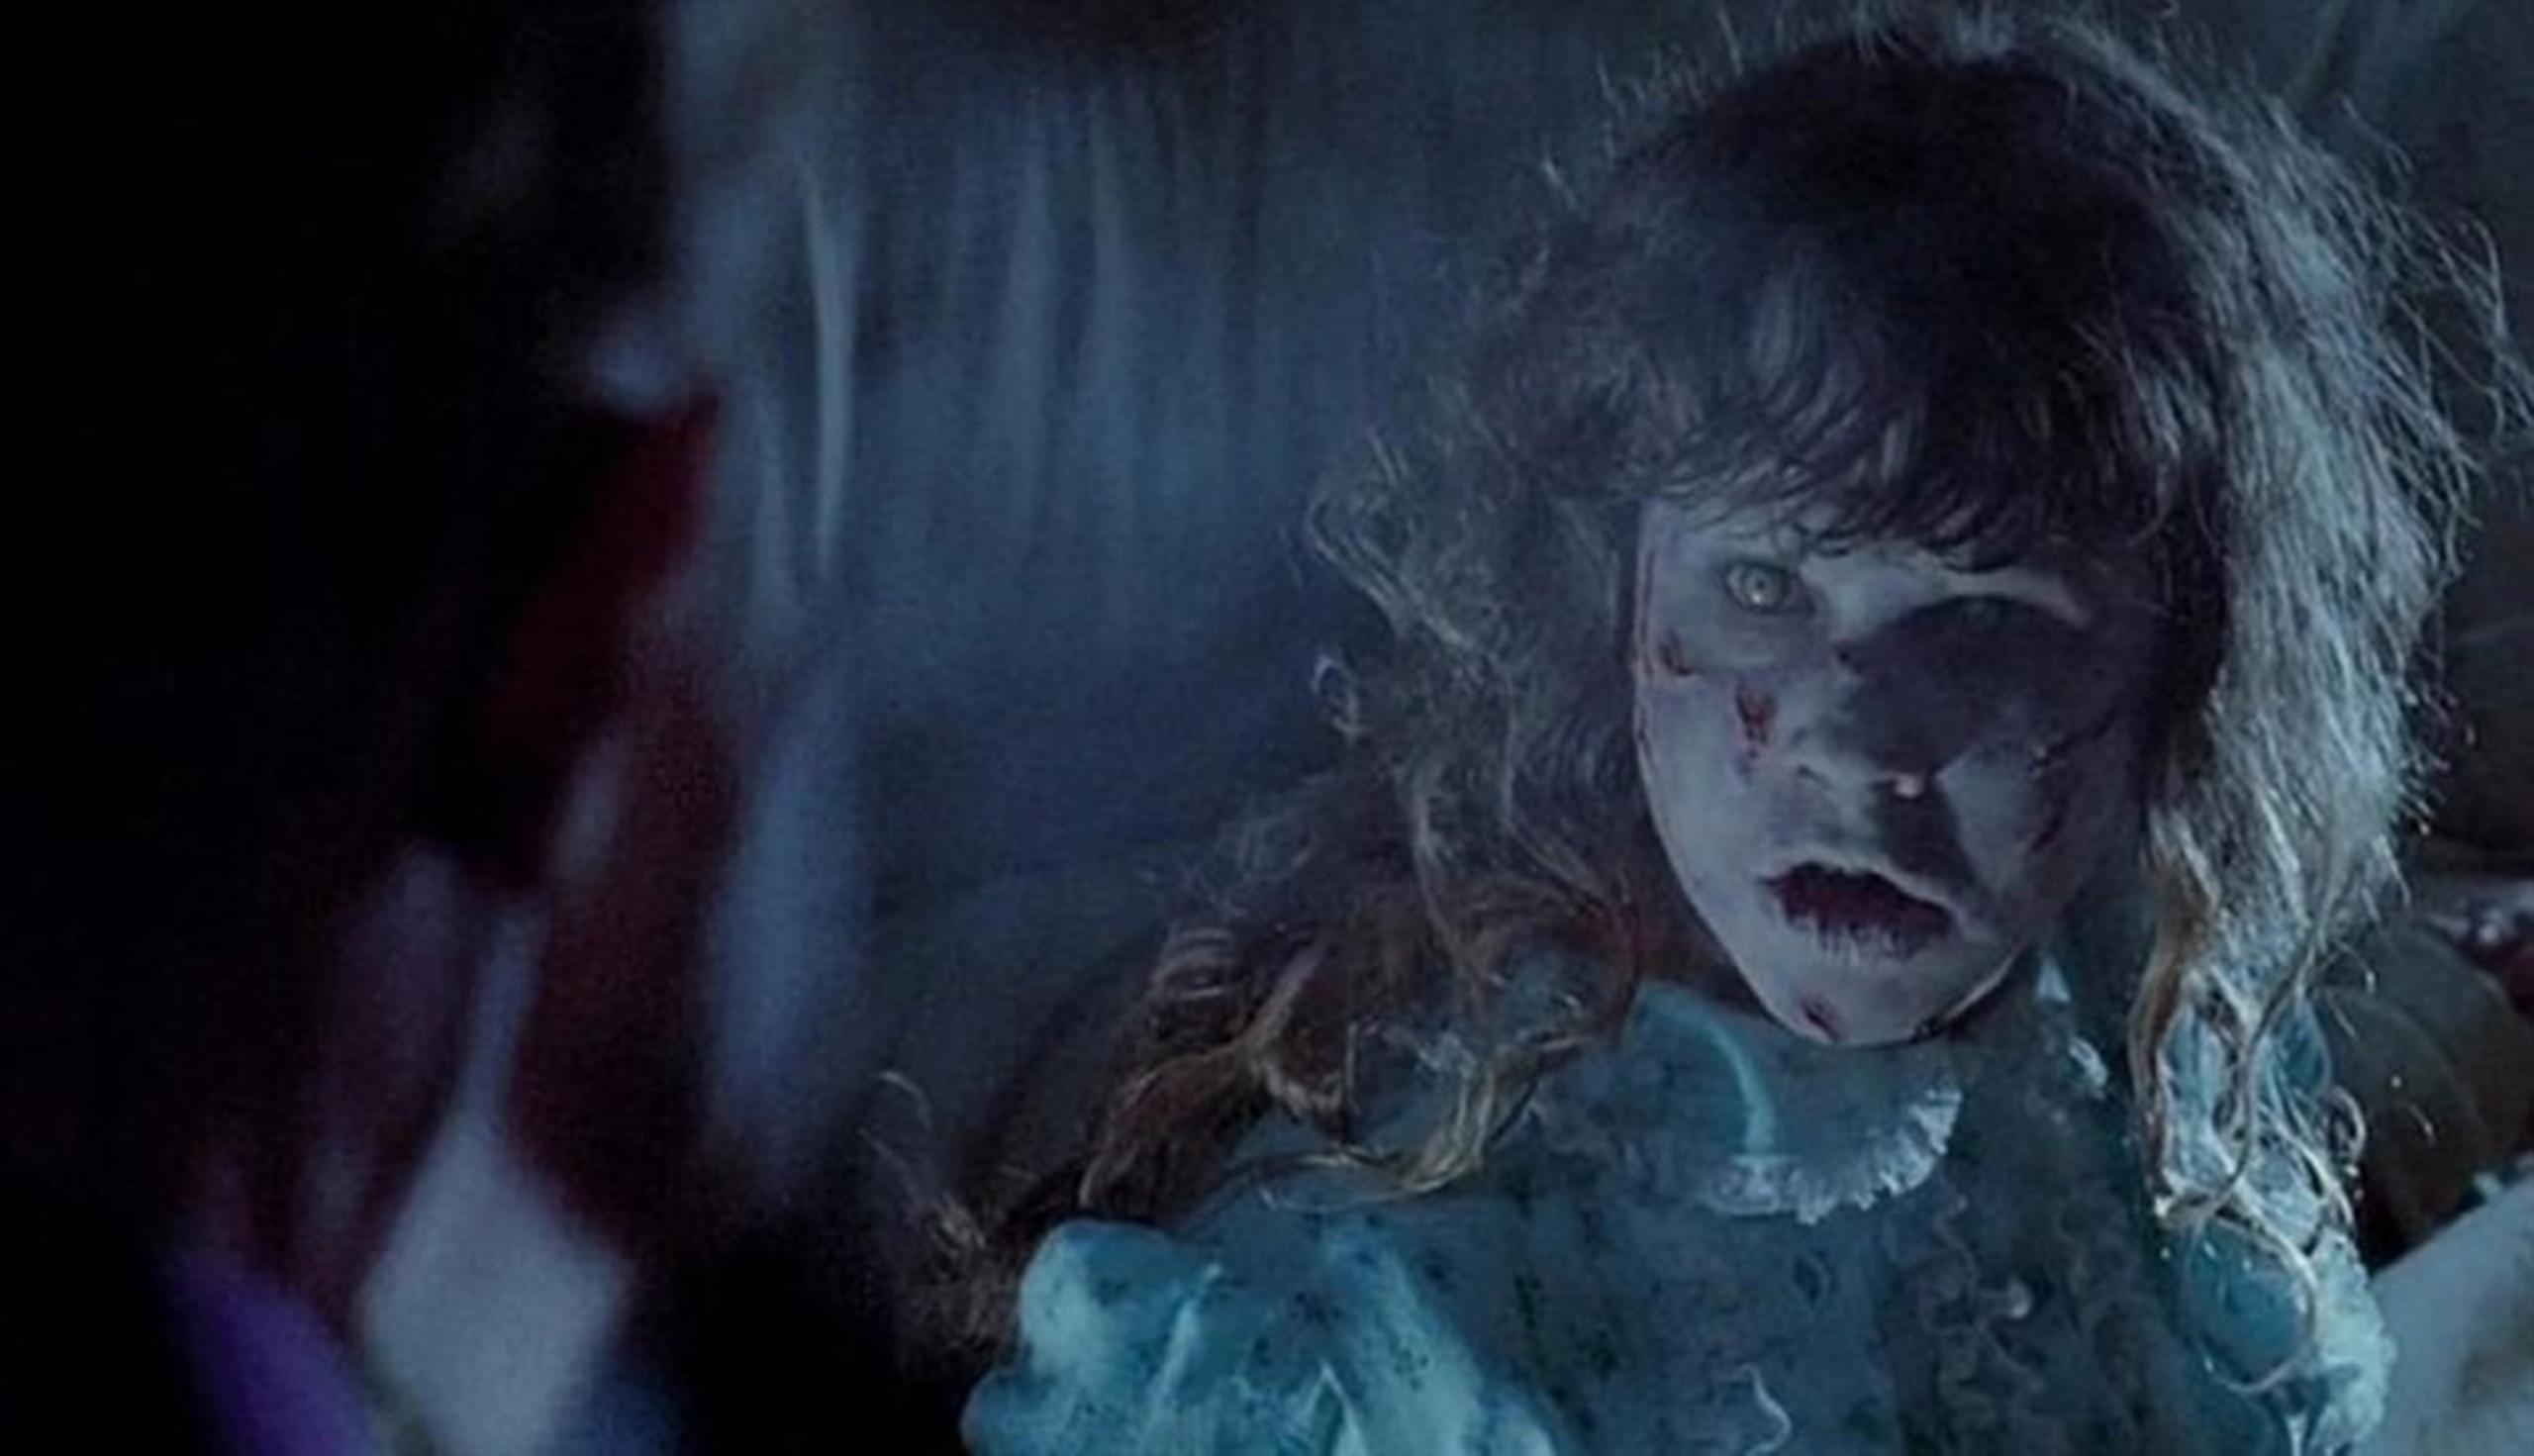 "The Exorcist" (1973) Dirigida por William Friedkin, la cinta cuenta la historia del exorcismo de Regan MacNeil (Linda Blair) luego de ser poseída aparentemente por un demonio. (GDA)